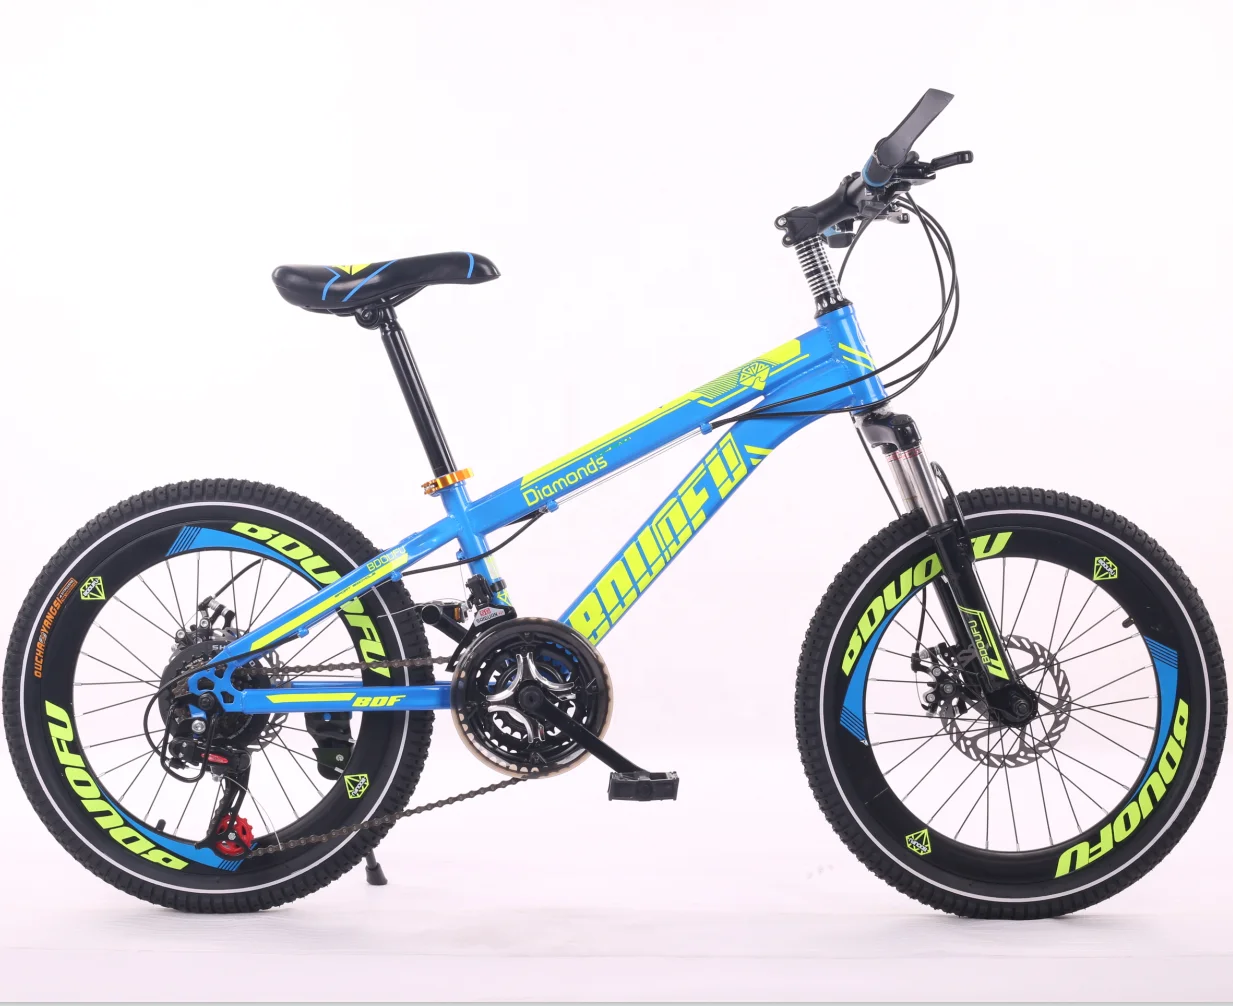 Велосипед для мальчика 14 лет. BMX GTR 29 велосипед. Велосипед Твиттер МТБ, для детей 10 лет карбон. Велосипед для мальчика 10 лет. Скоростной велосипед для мальчика 10 лет.